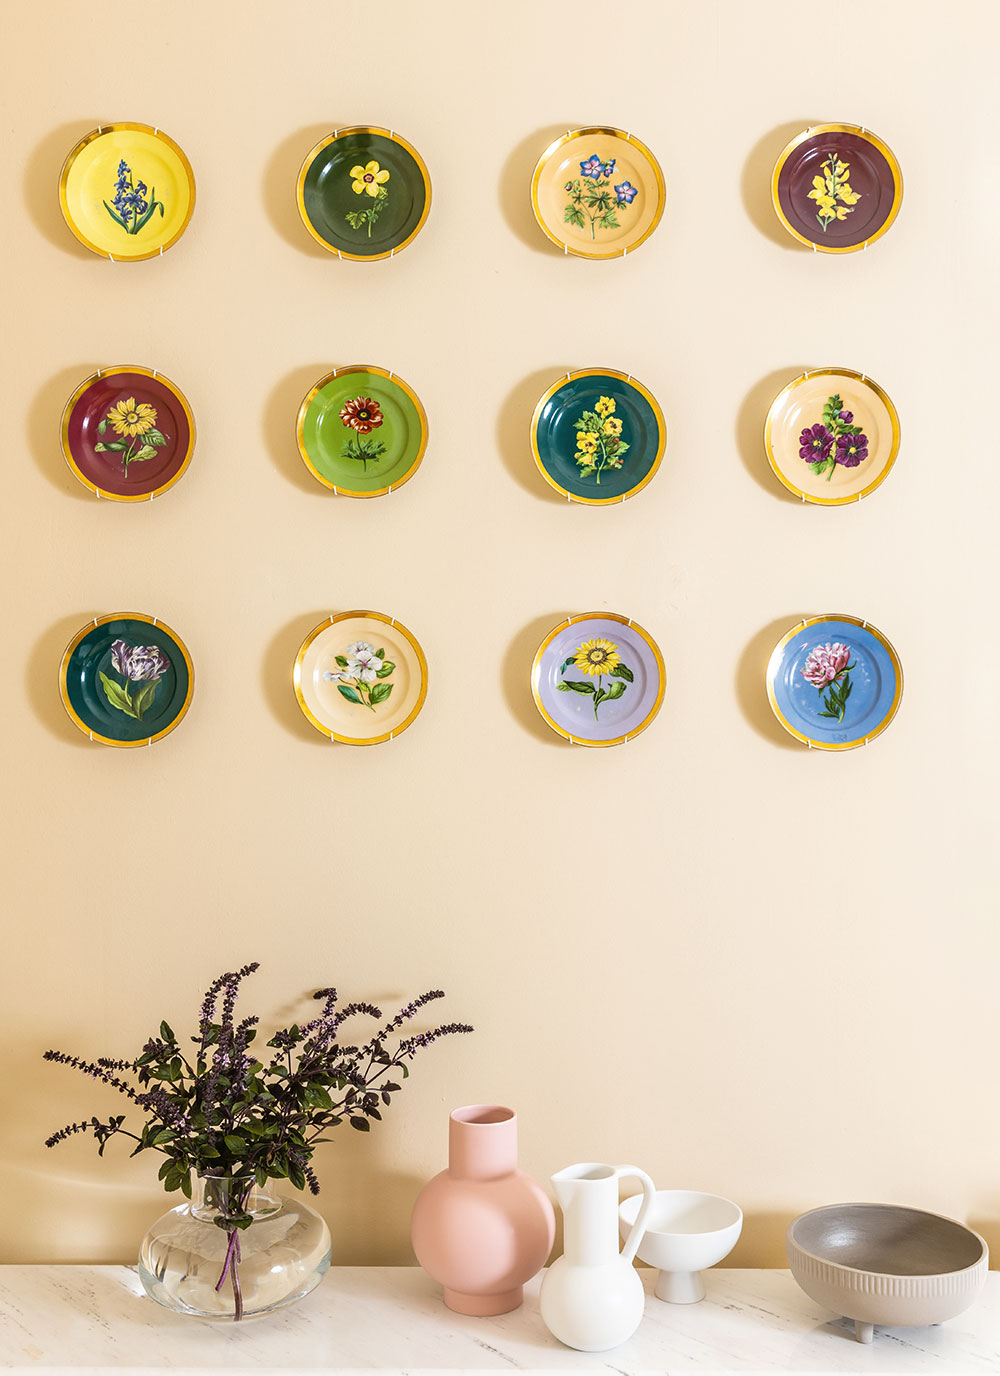 Krásným dekorativním prvkem jsou originální talíře zavěšené na stěně.